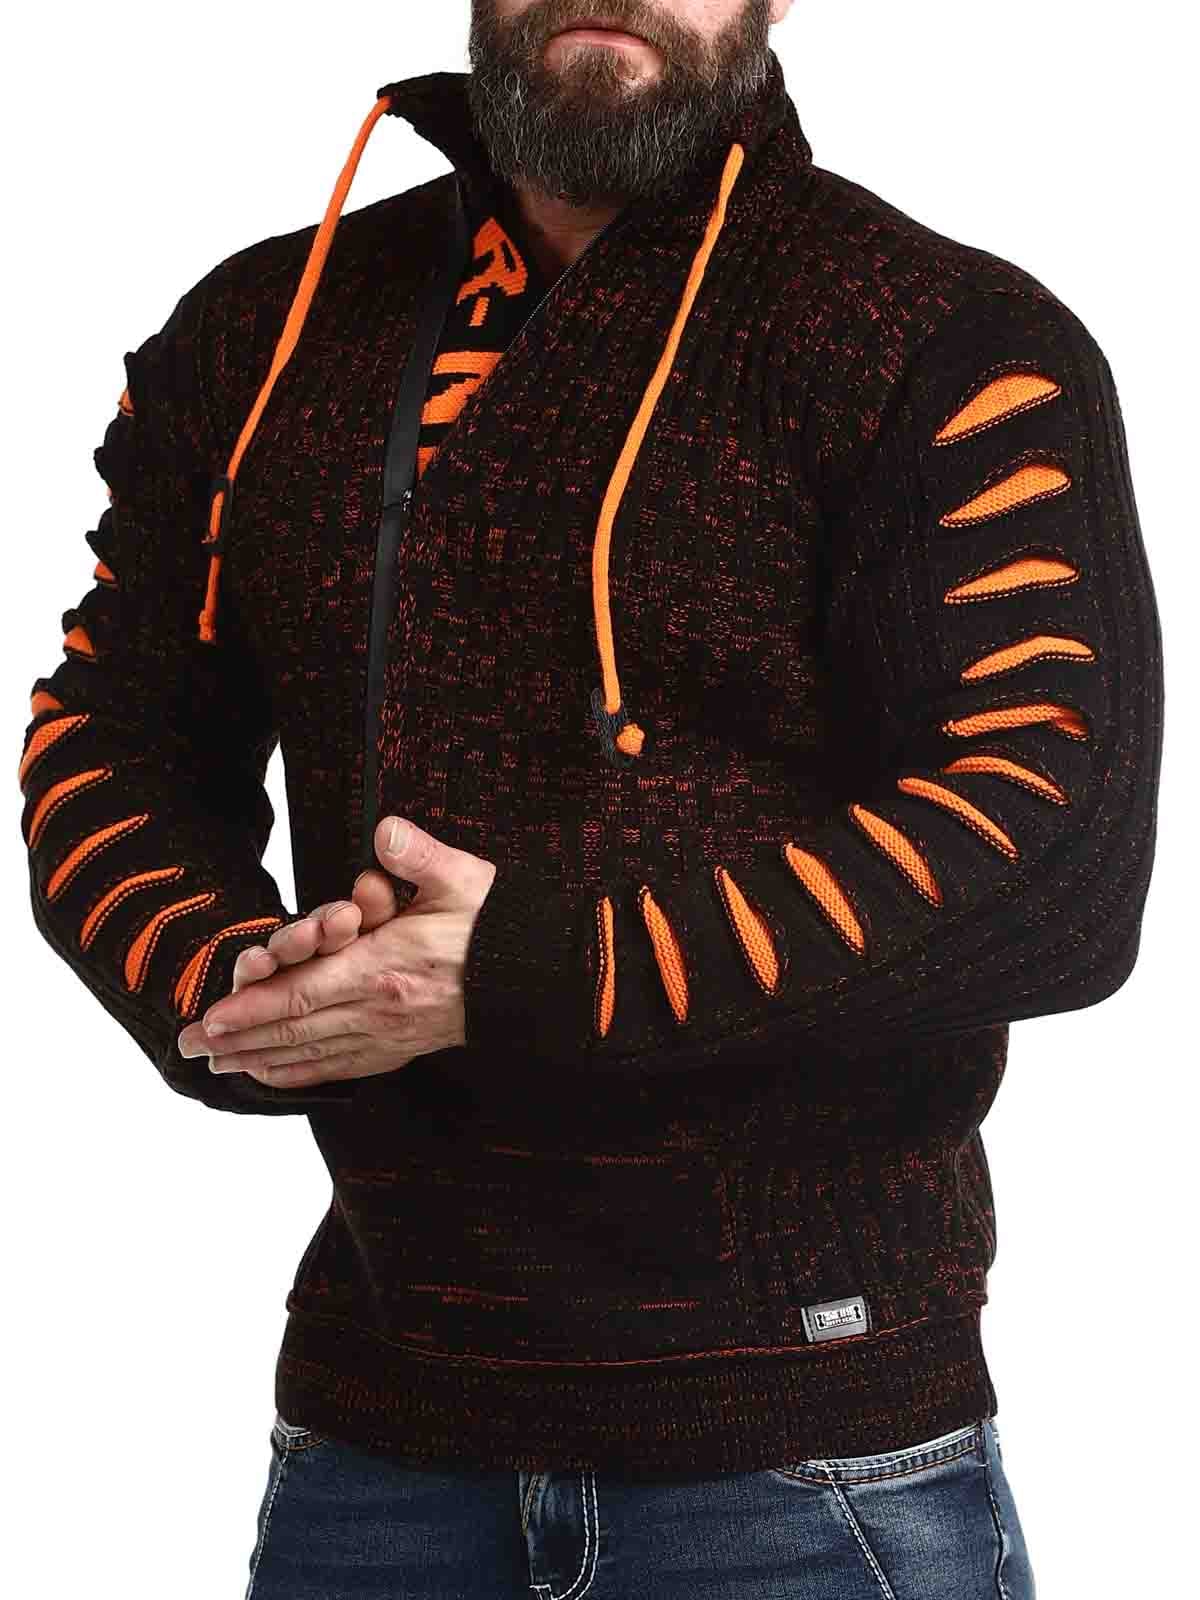 Bartoli Sweater Black Orange_2.jpg